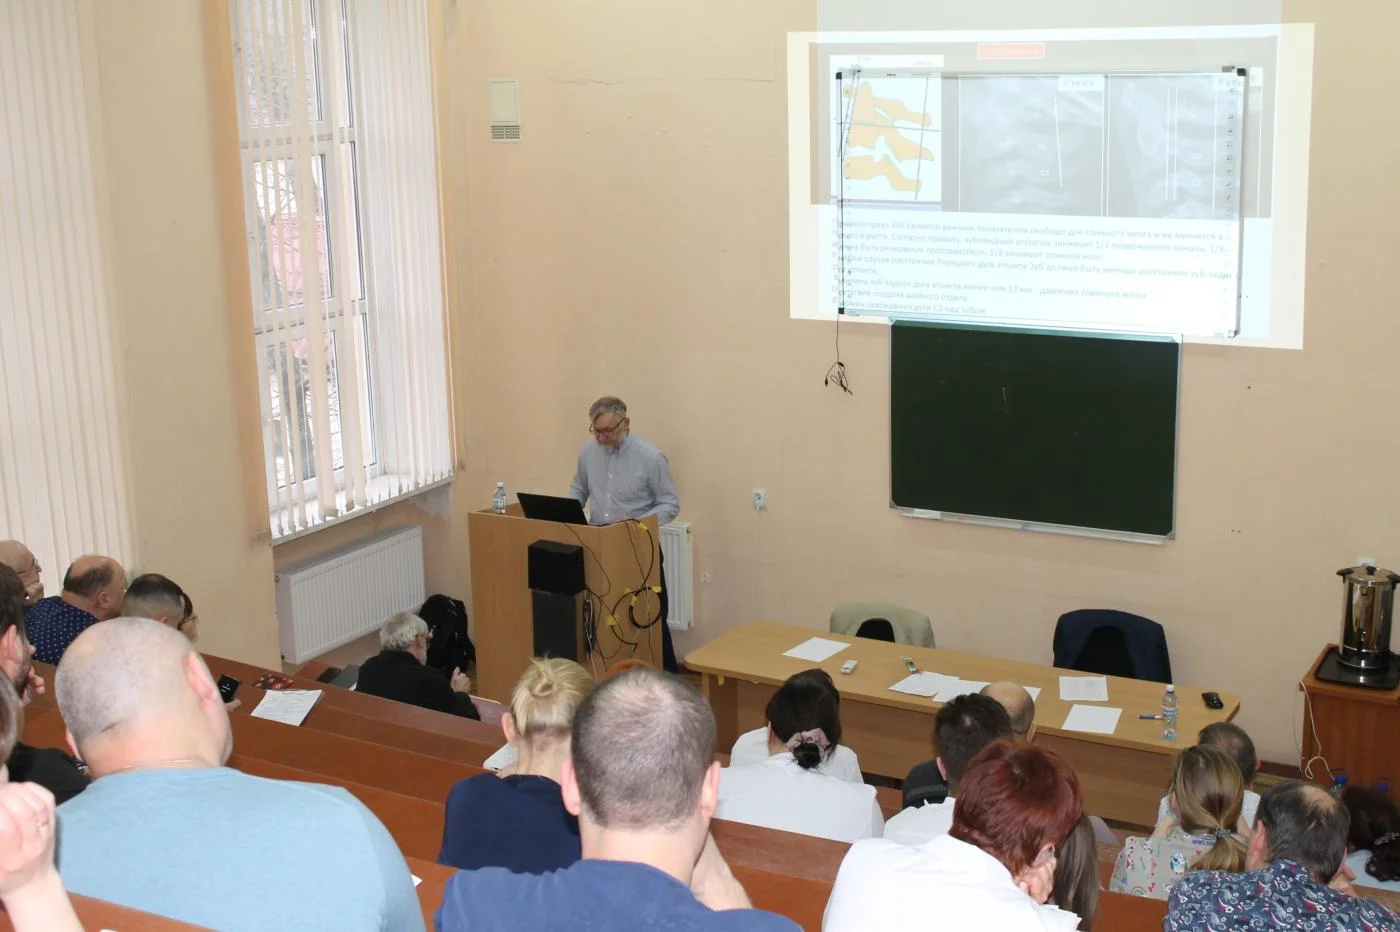 Конференция для врачей состоялась в Детской областной больнице Калининградской области